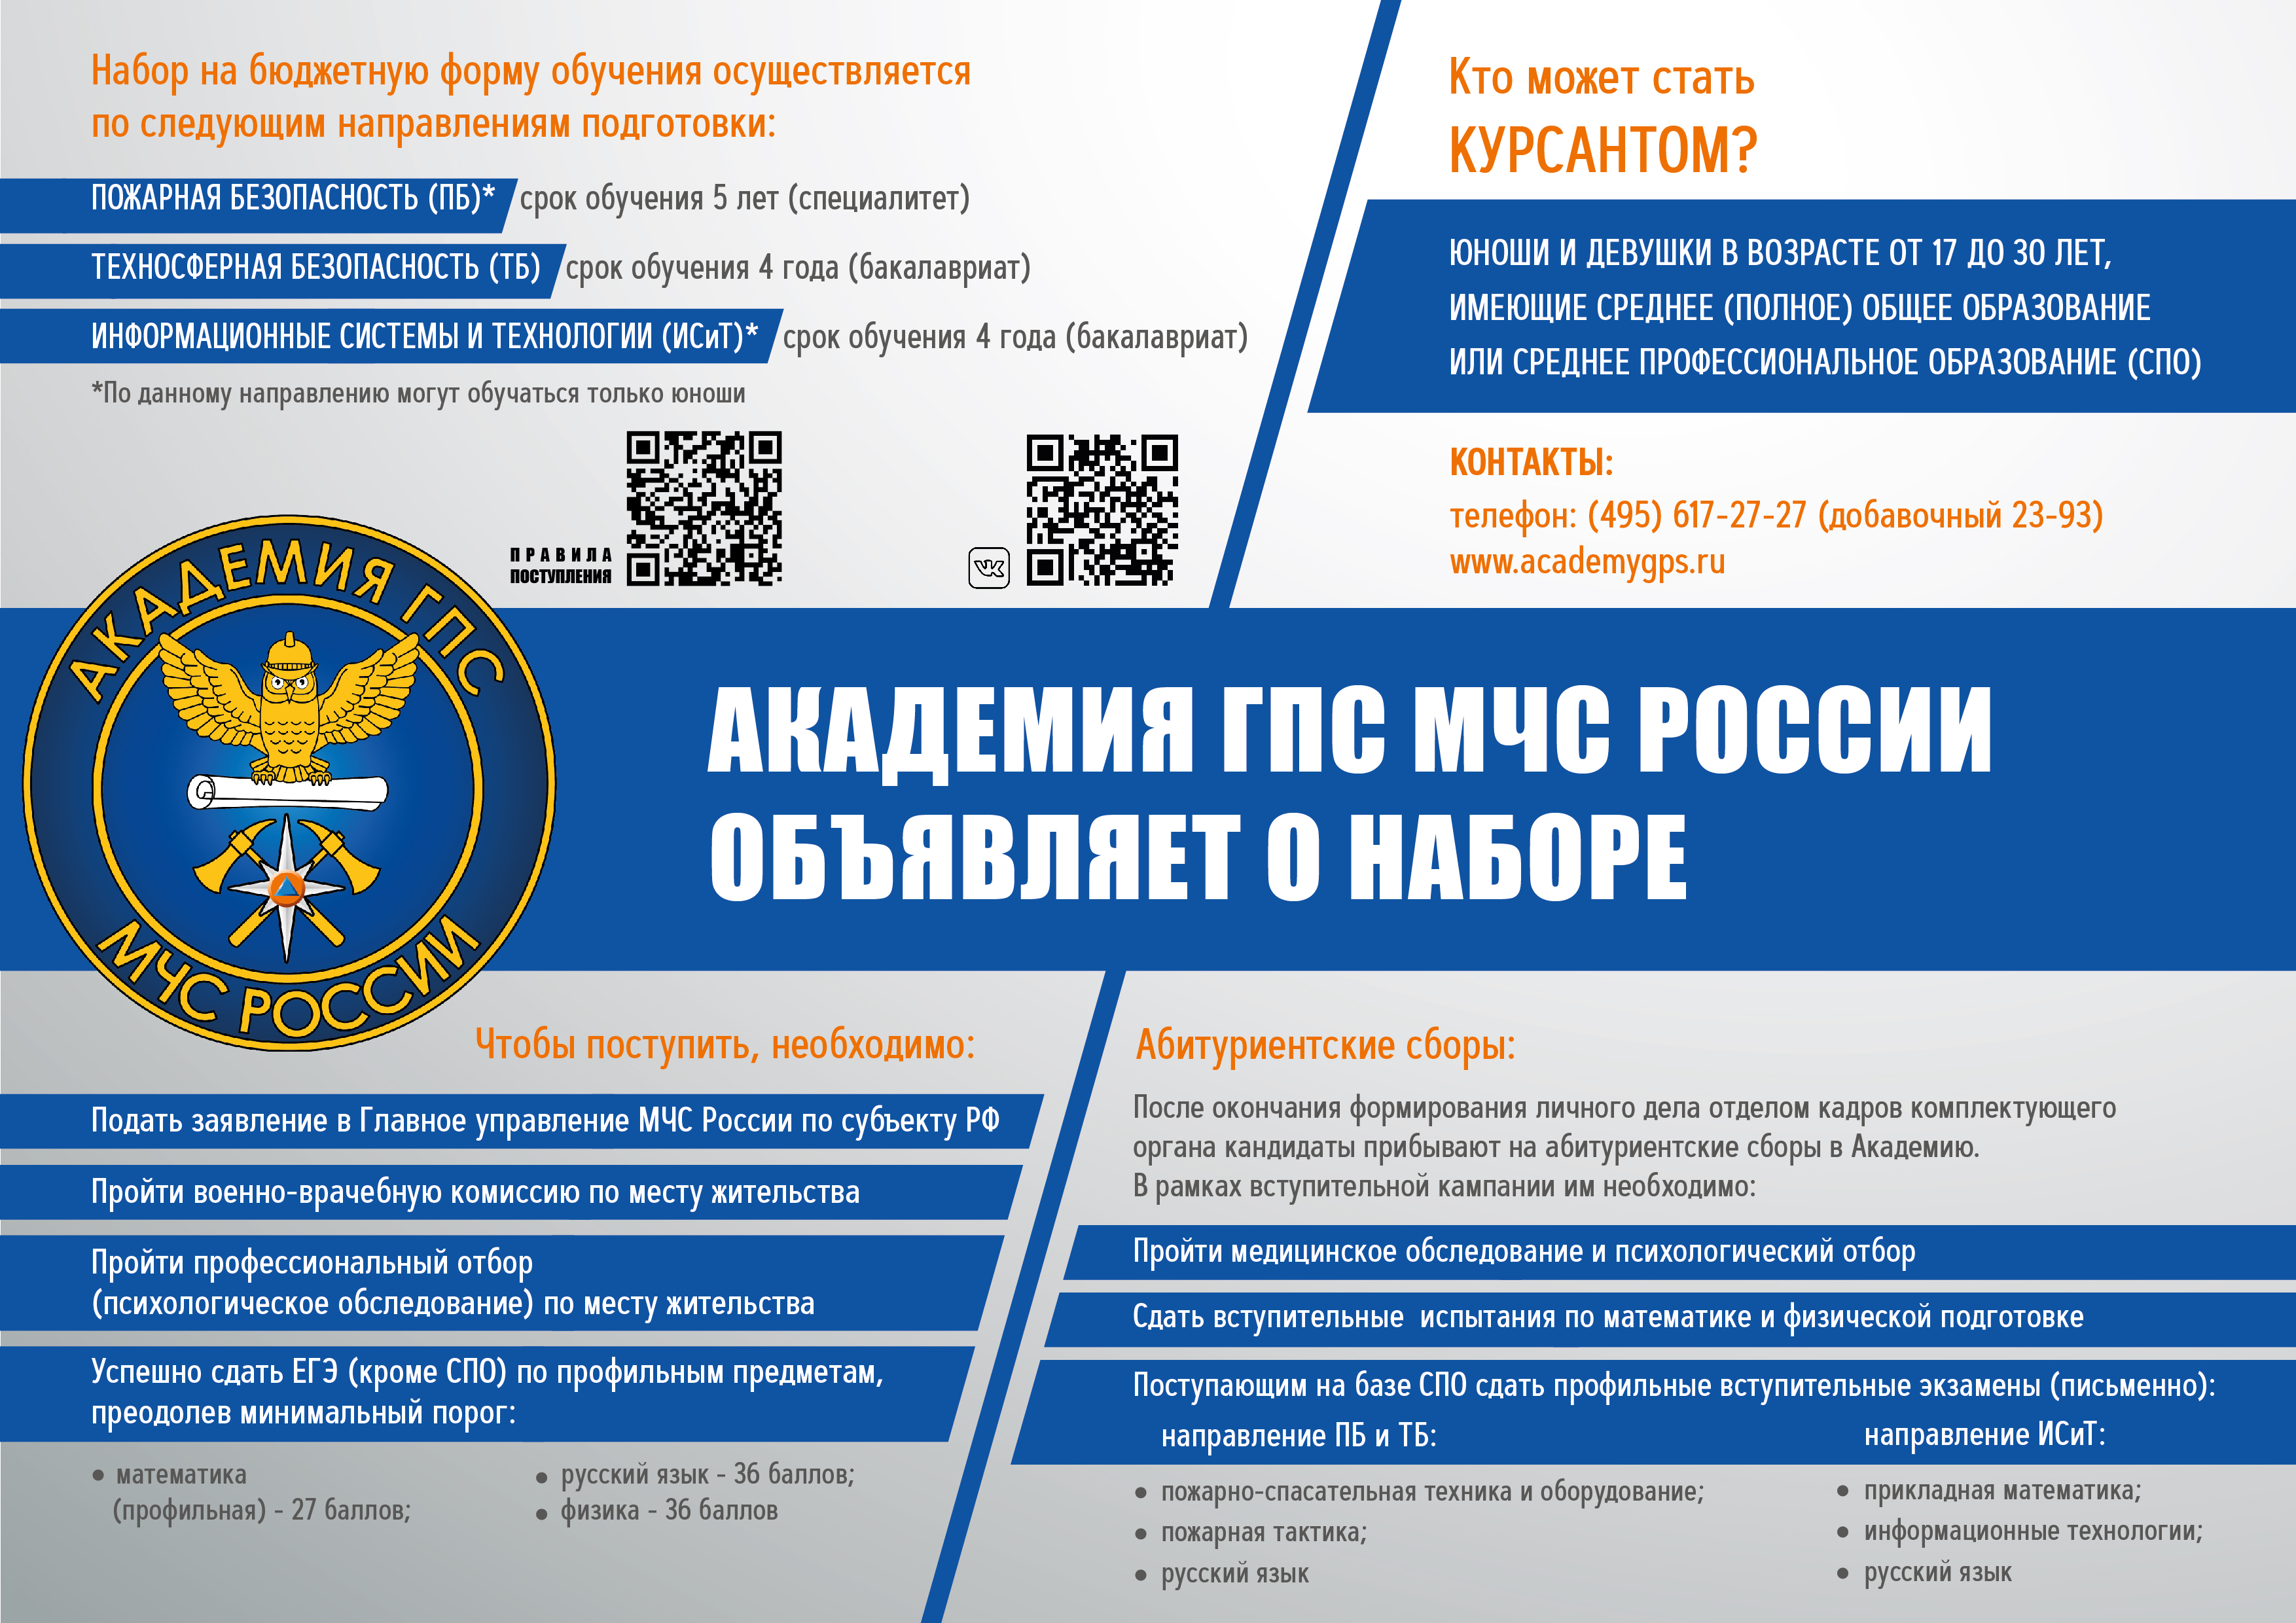 Академия ГПС МЧС России объявляет о наборе.